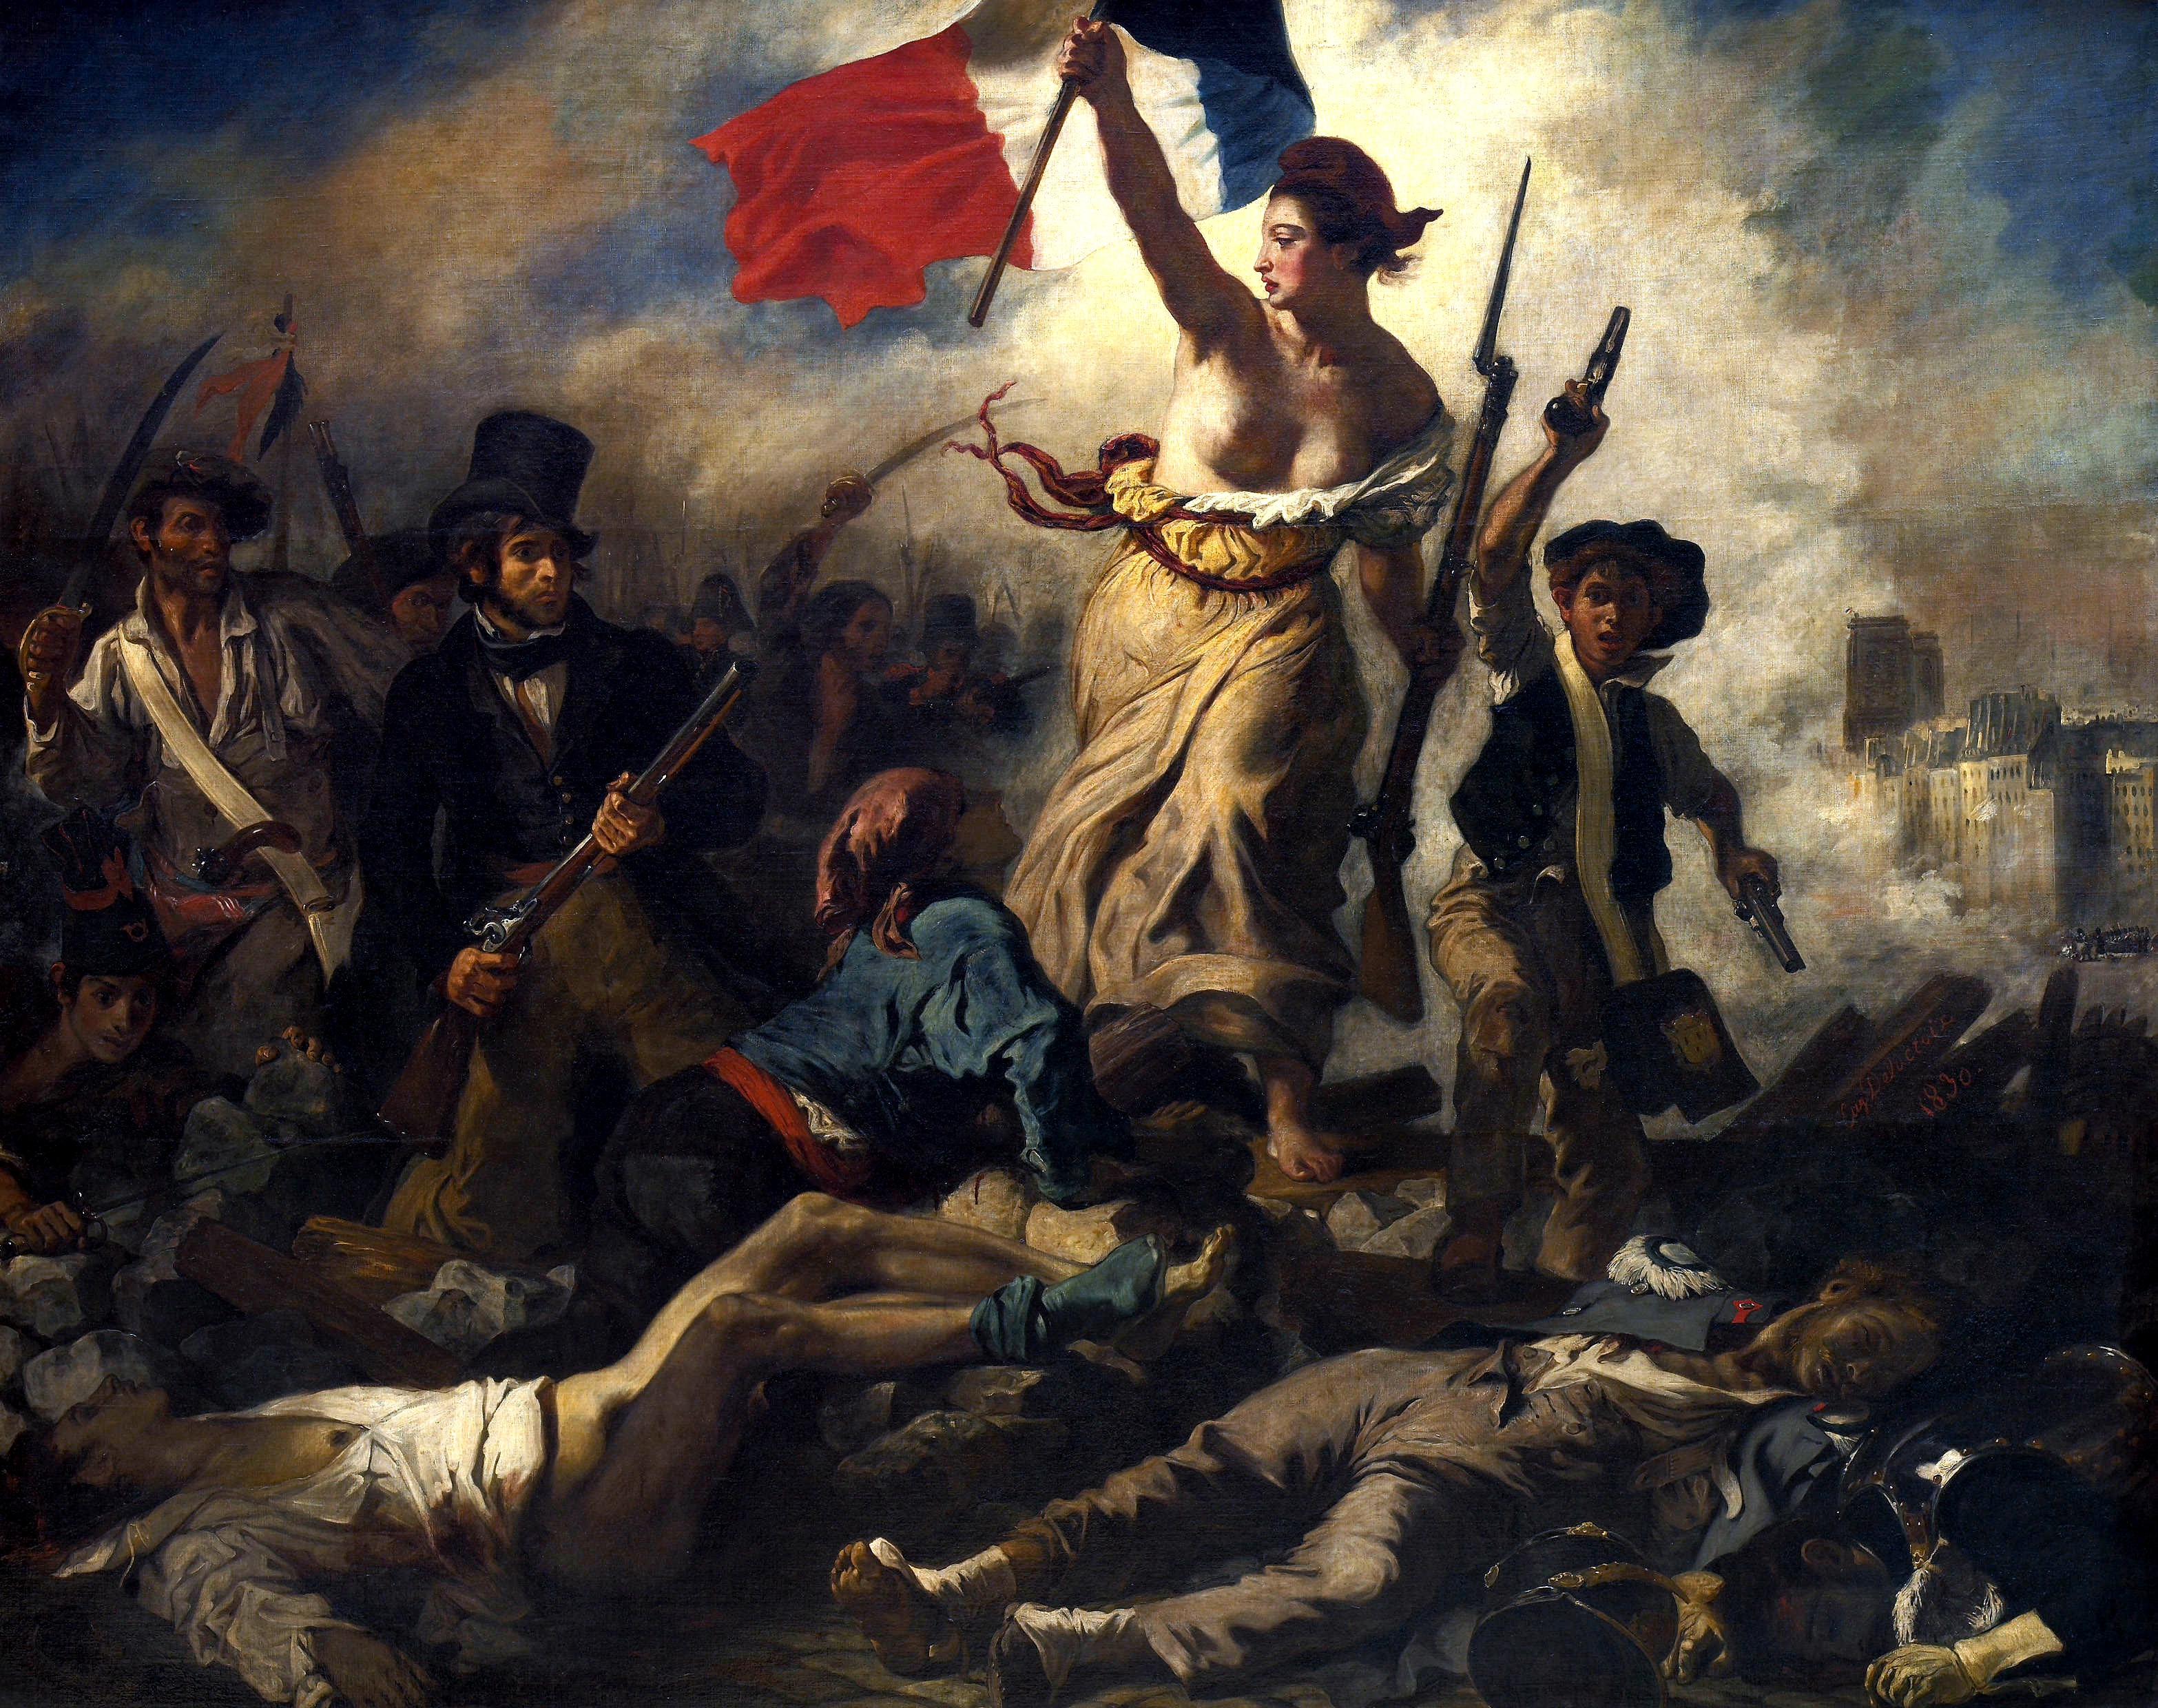 A Szabadság vezeti a népet by Eugène Delacroix - 1830 - 260 x 325 cm 